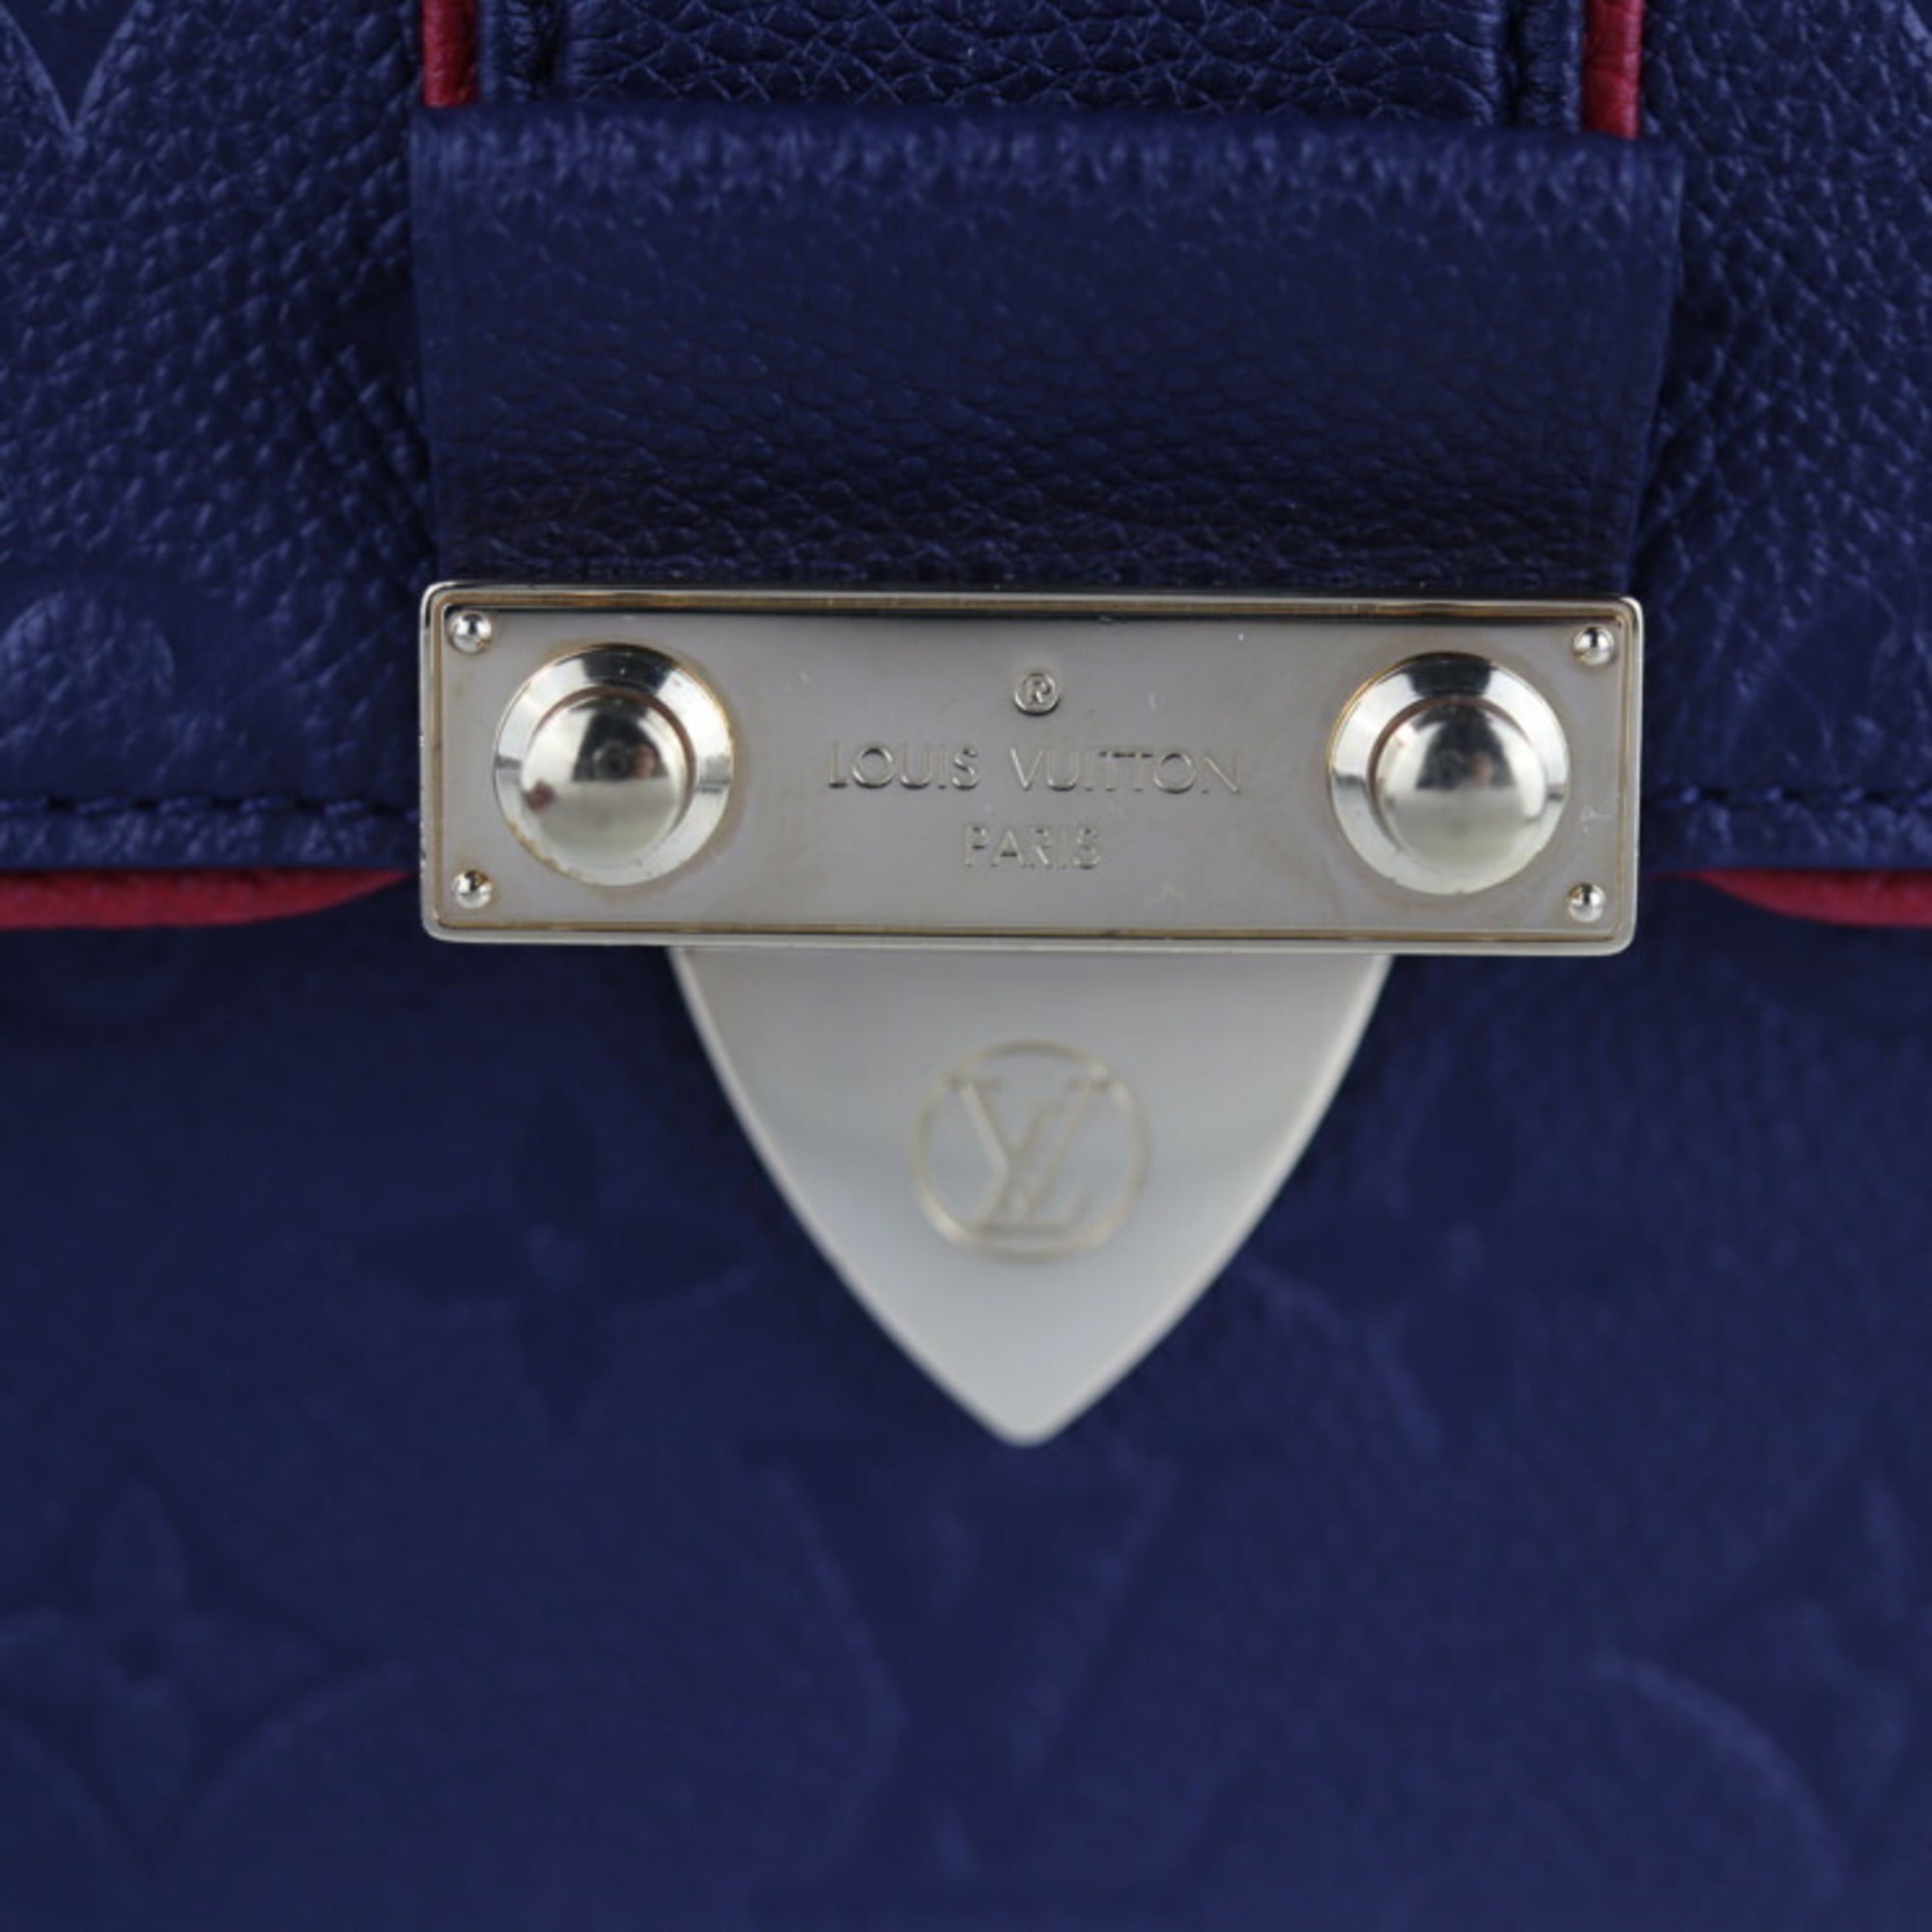 AUTHENTIC Louis Vuitton Saint Sulpice Monogram Empreinte 2way chain bag